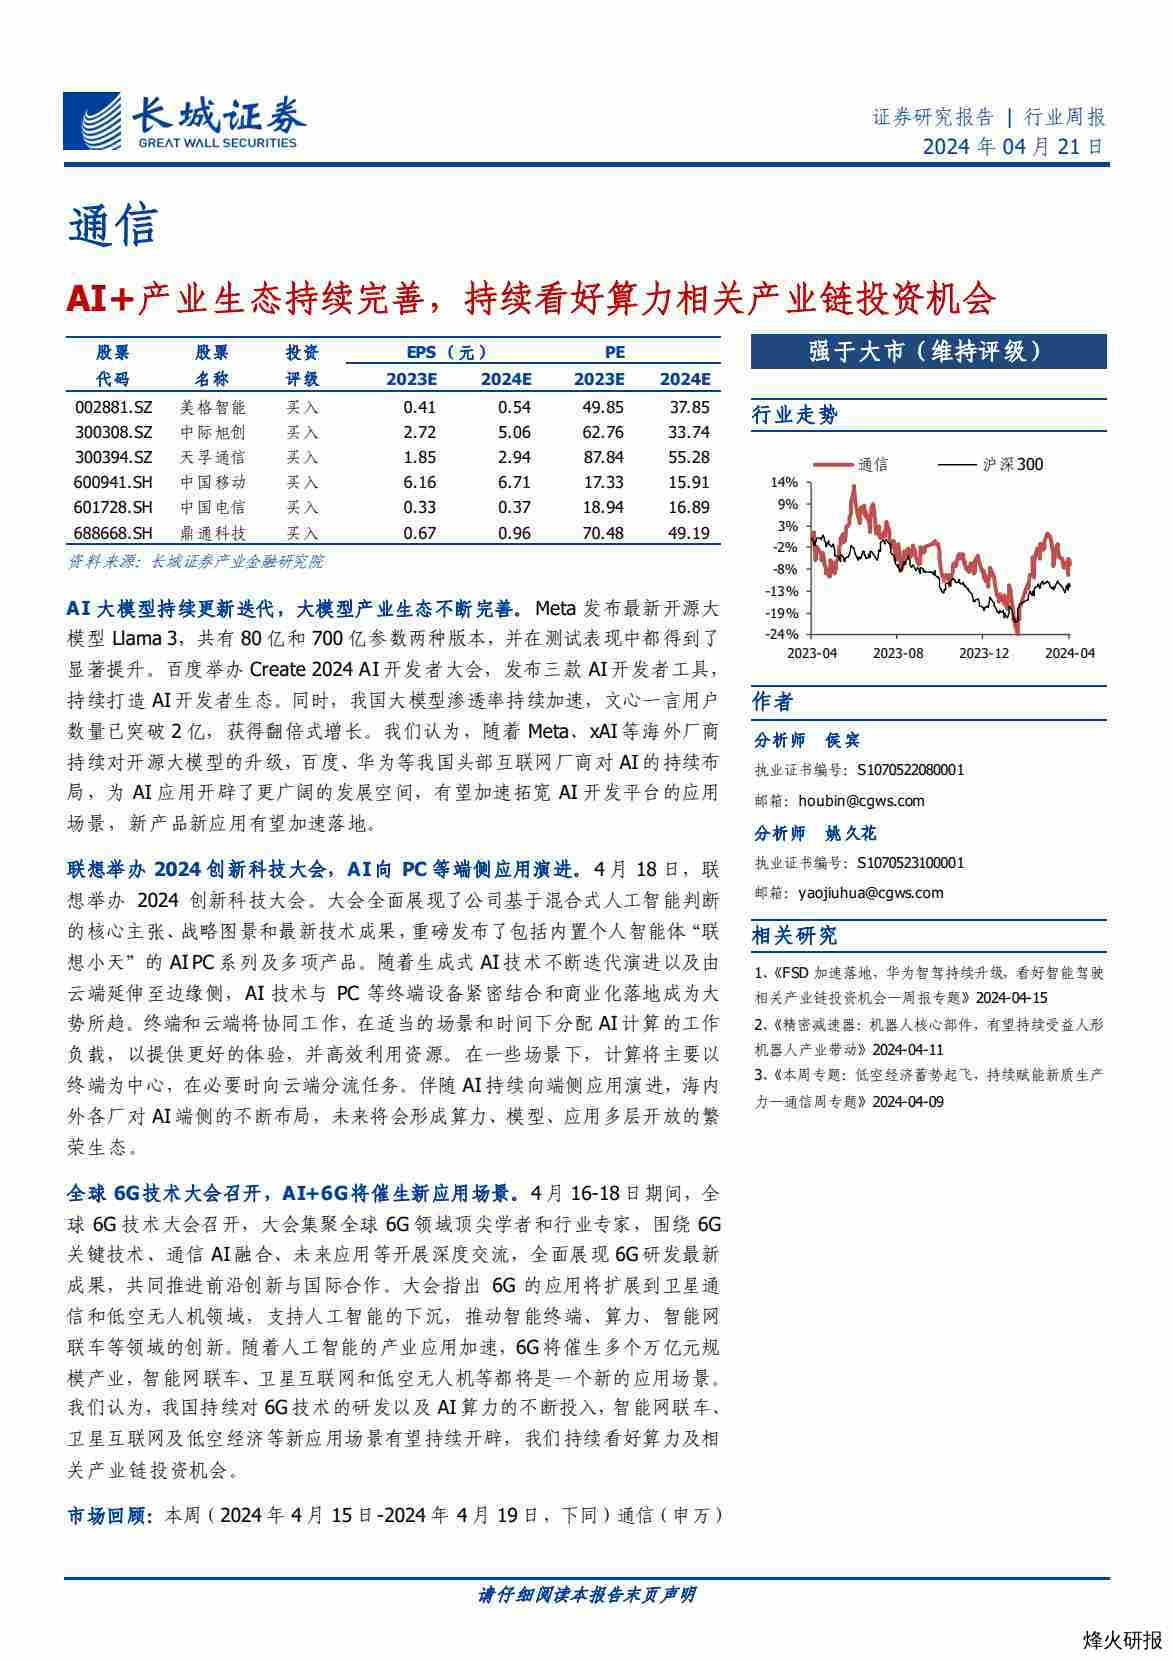 【长城证券】AI+产业生态持续完善，持续看好算力相关产业链投资机会.pdf-第一页